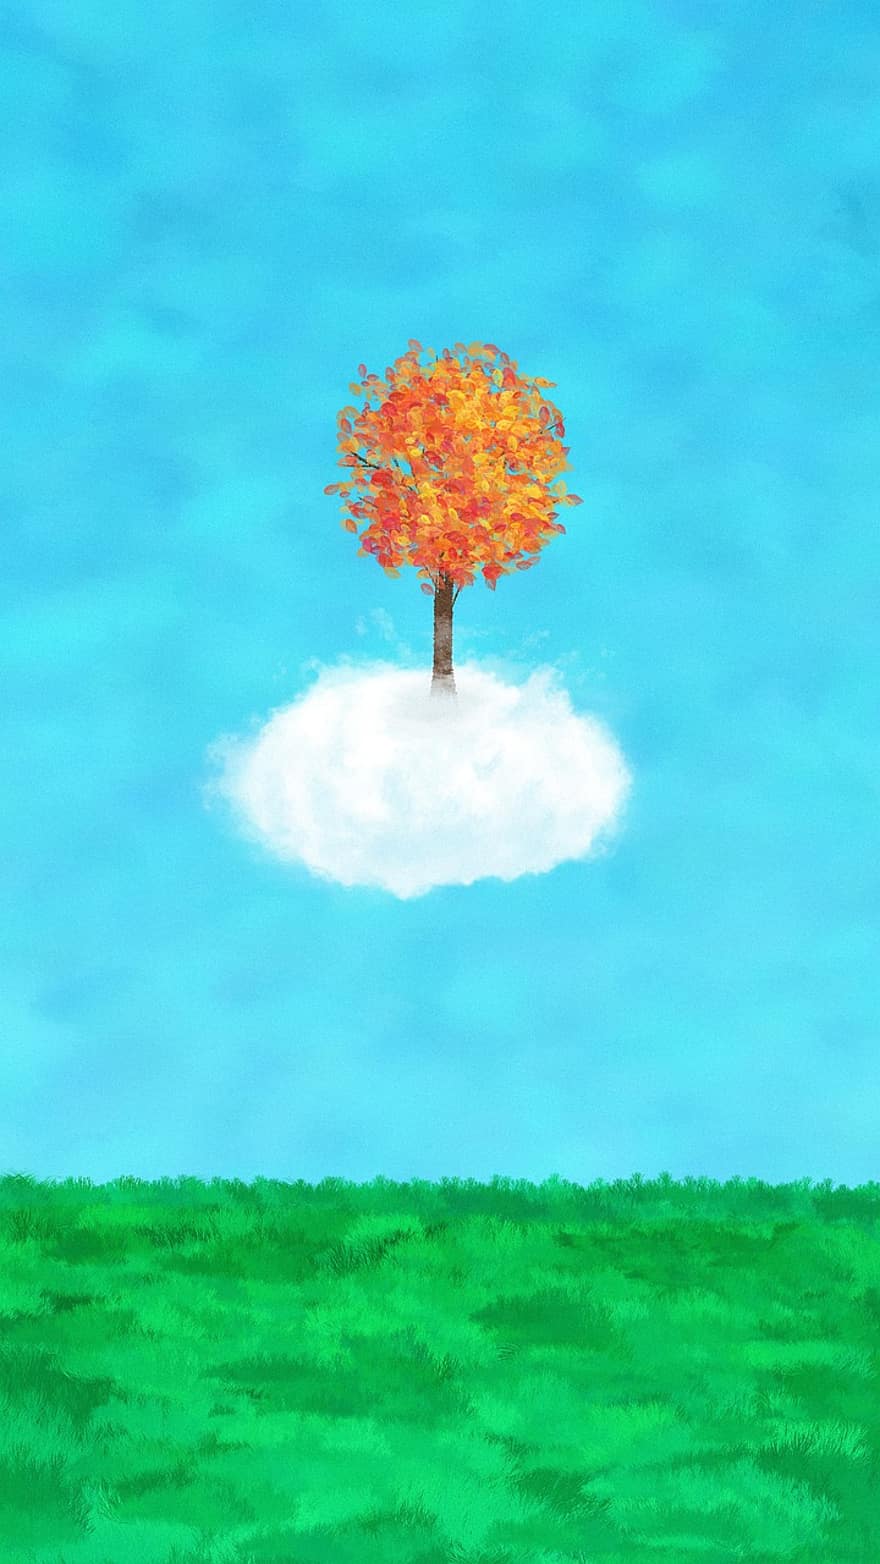 ζωγραφική, δημιουργικότητα, τοπίο, σύννεφο, λιβάδια, δέντρο